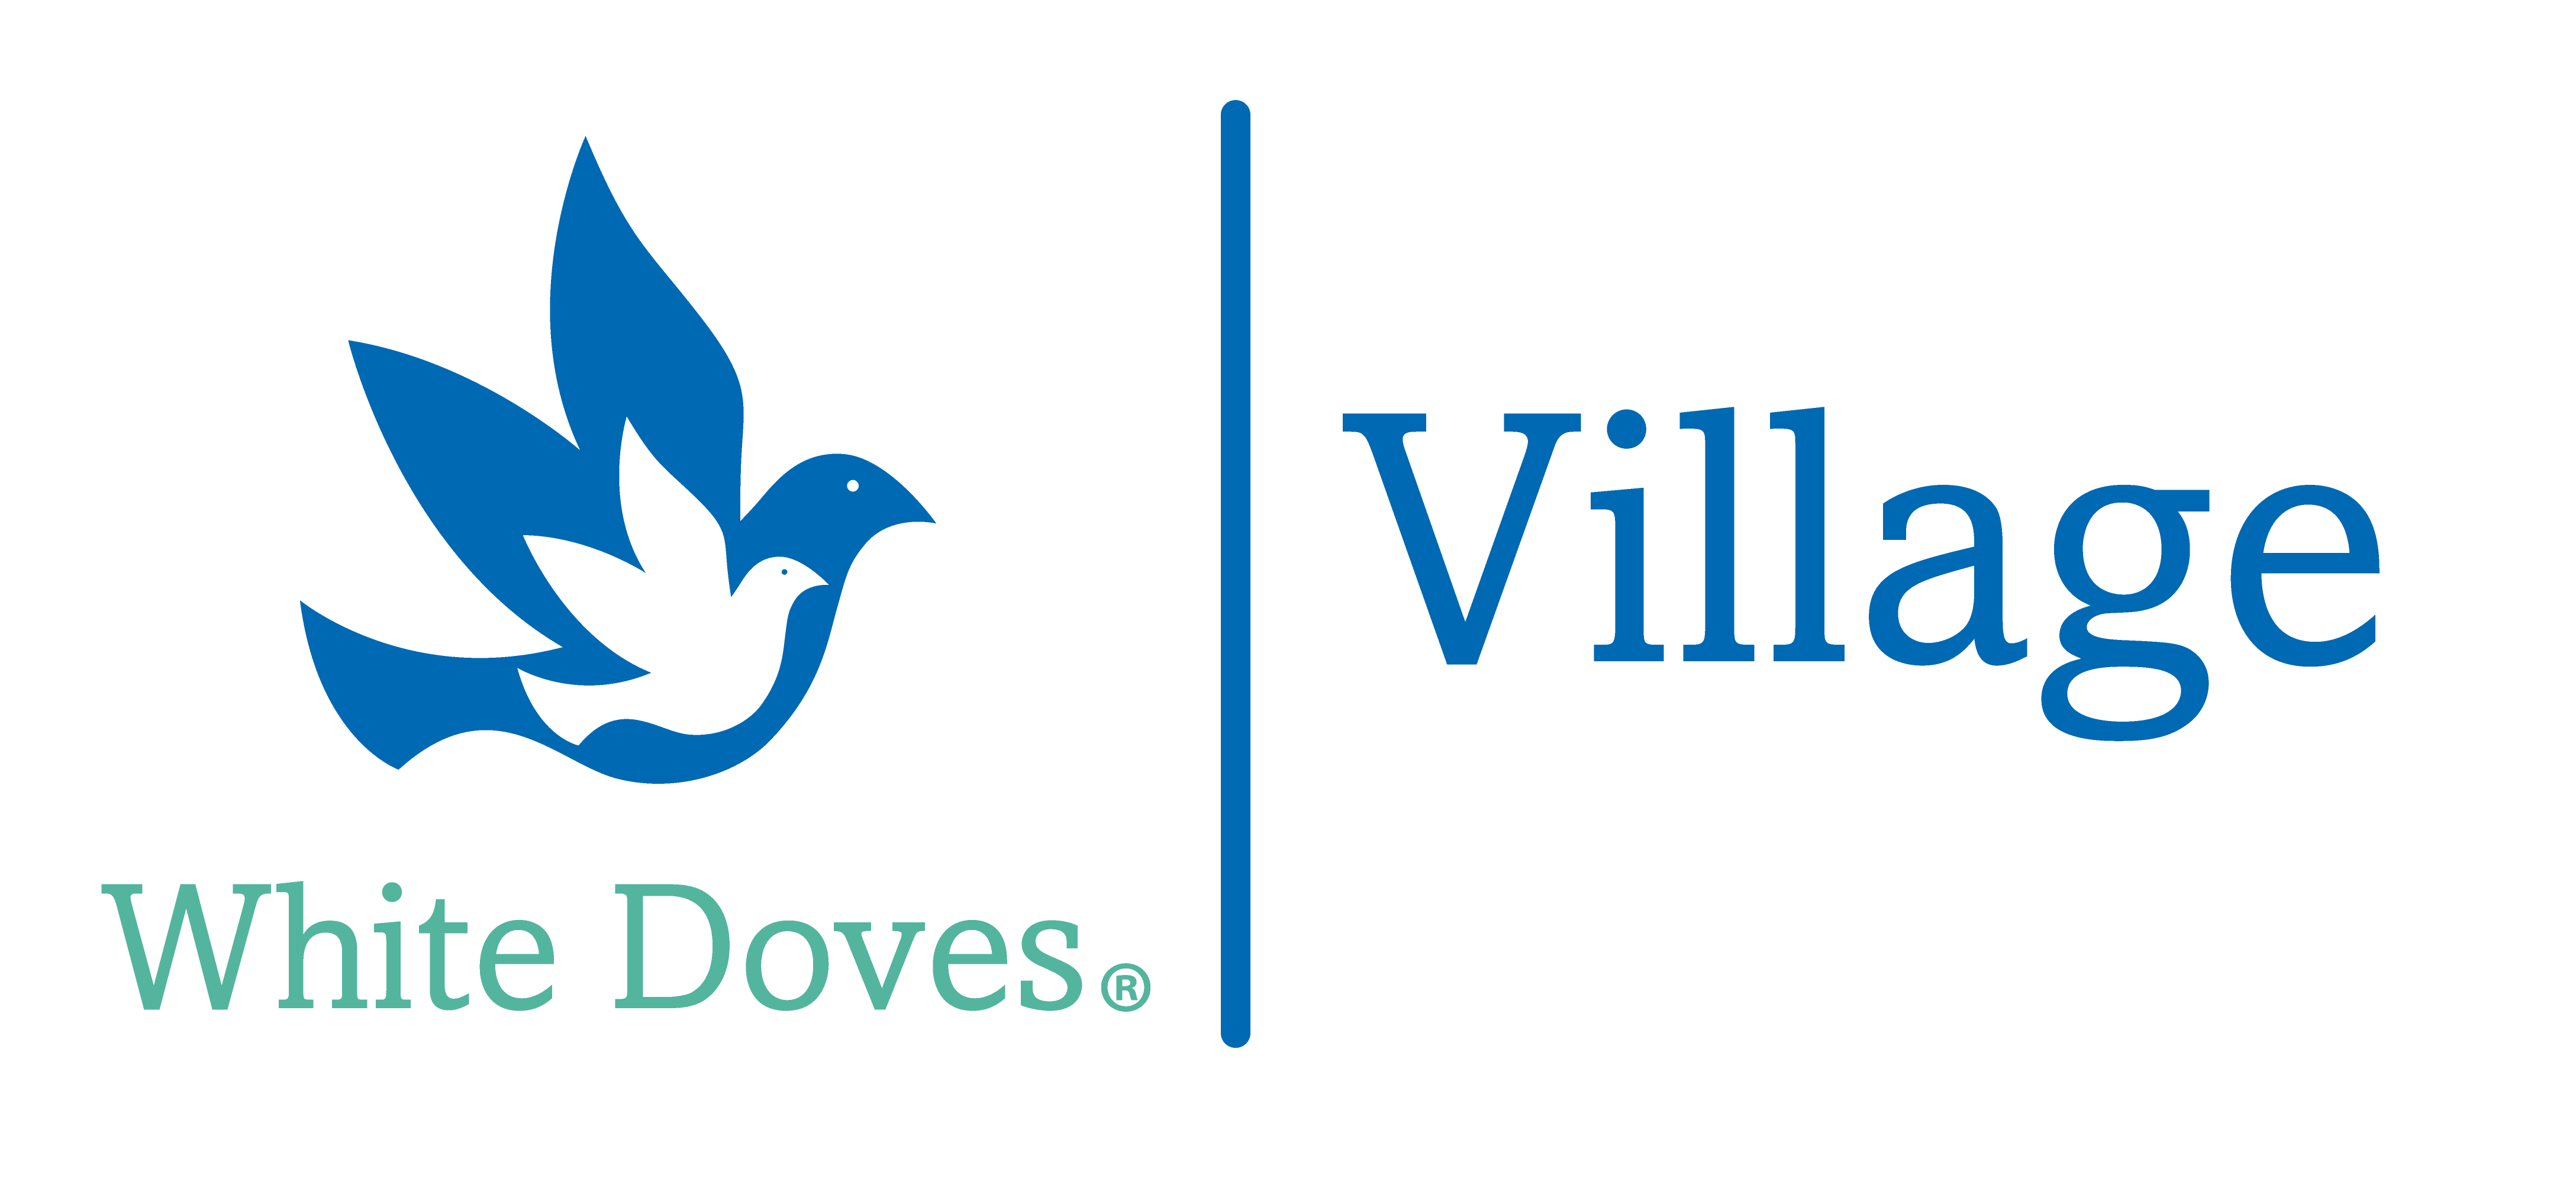 White Doves Village